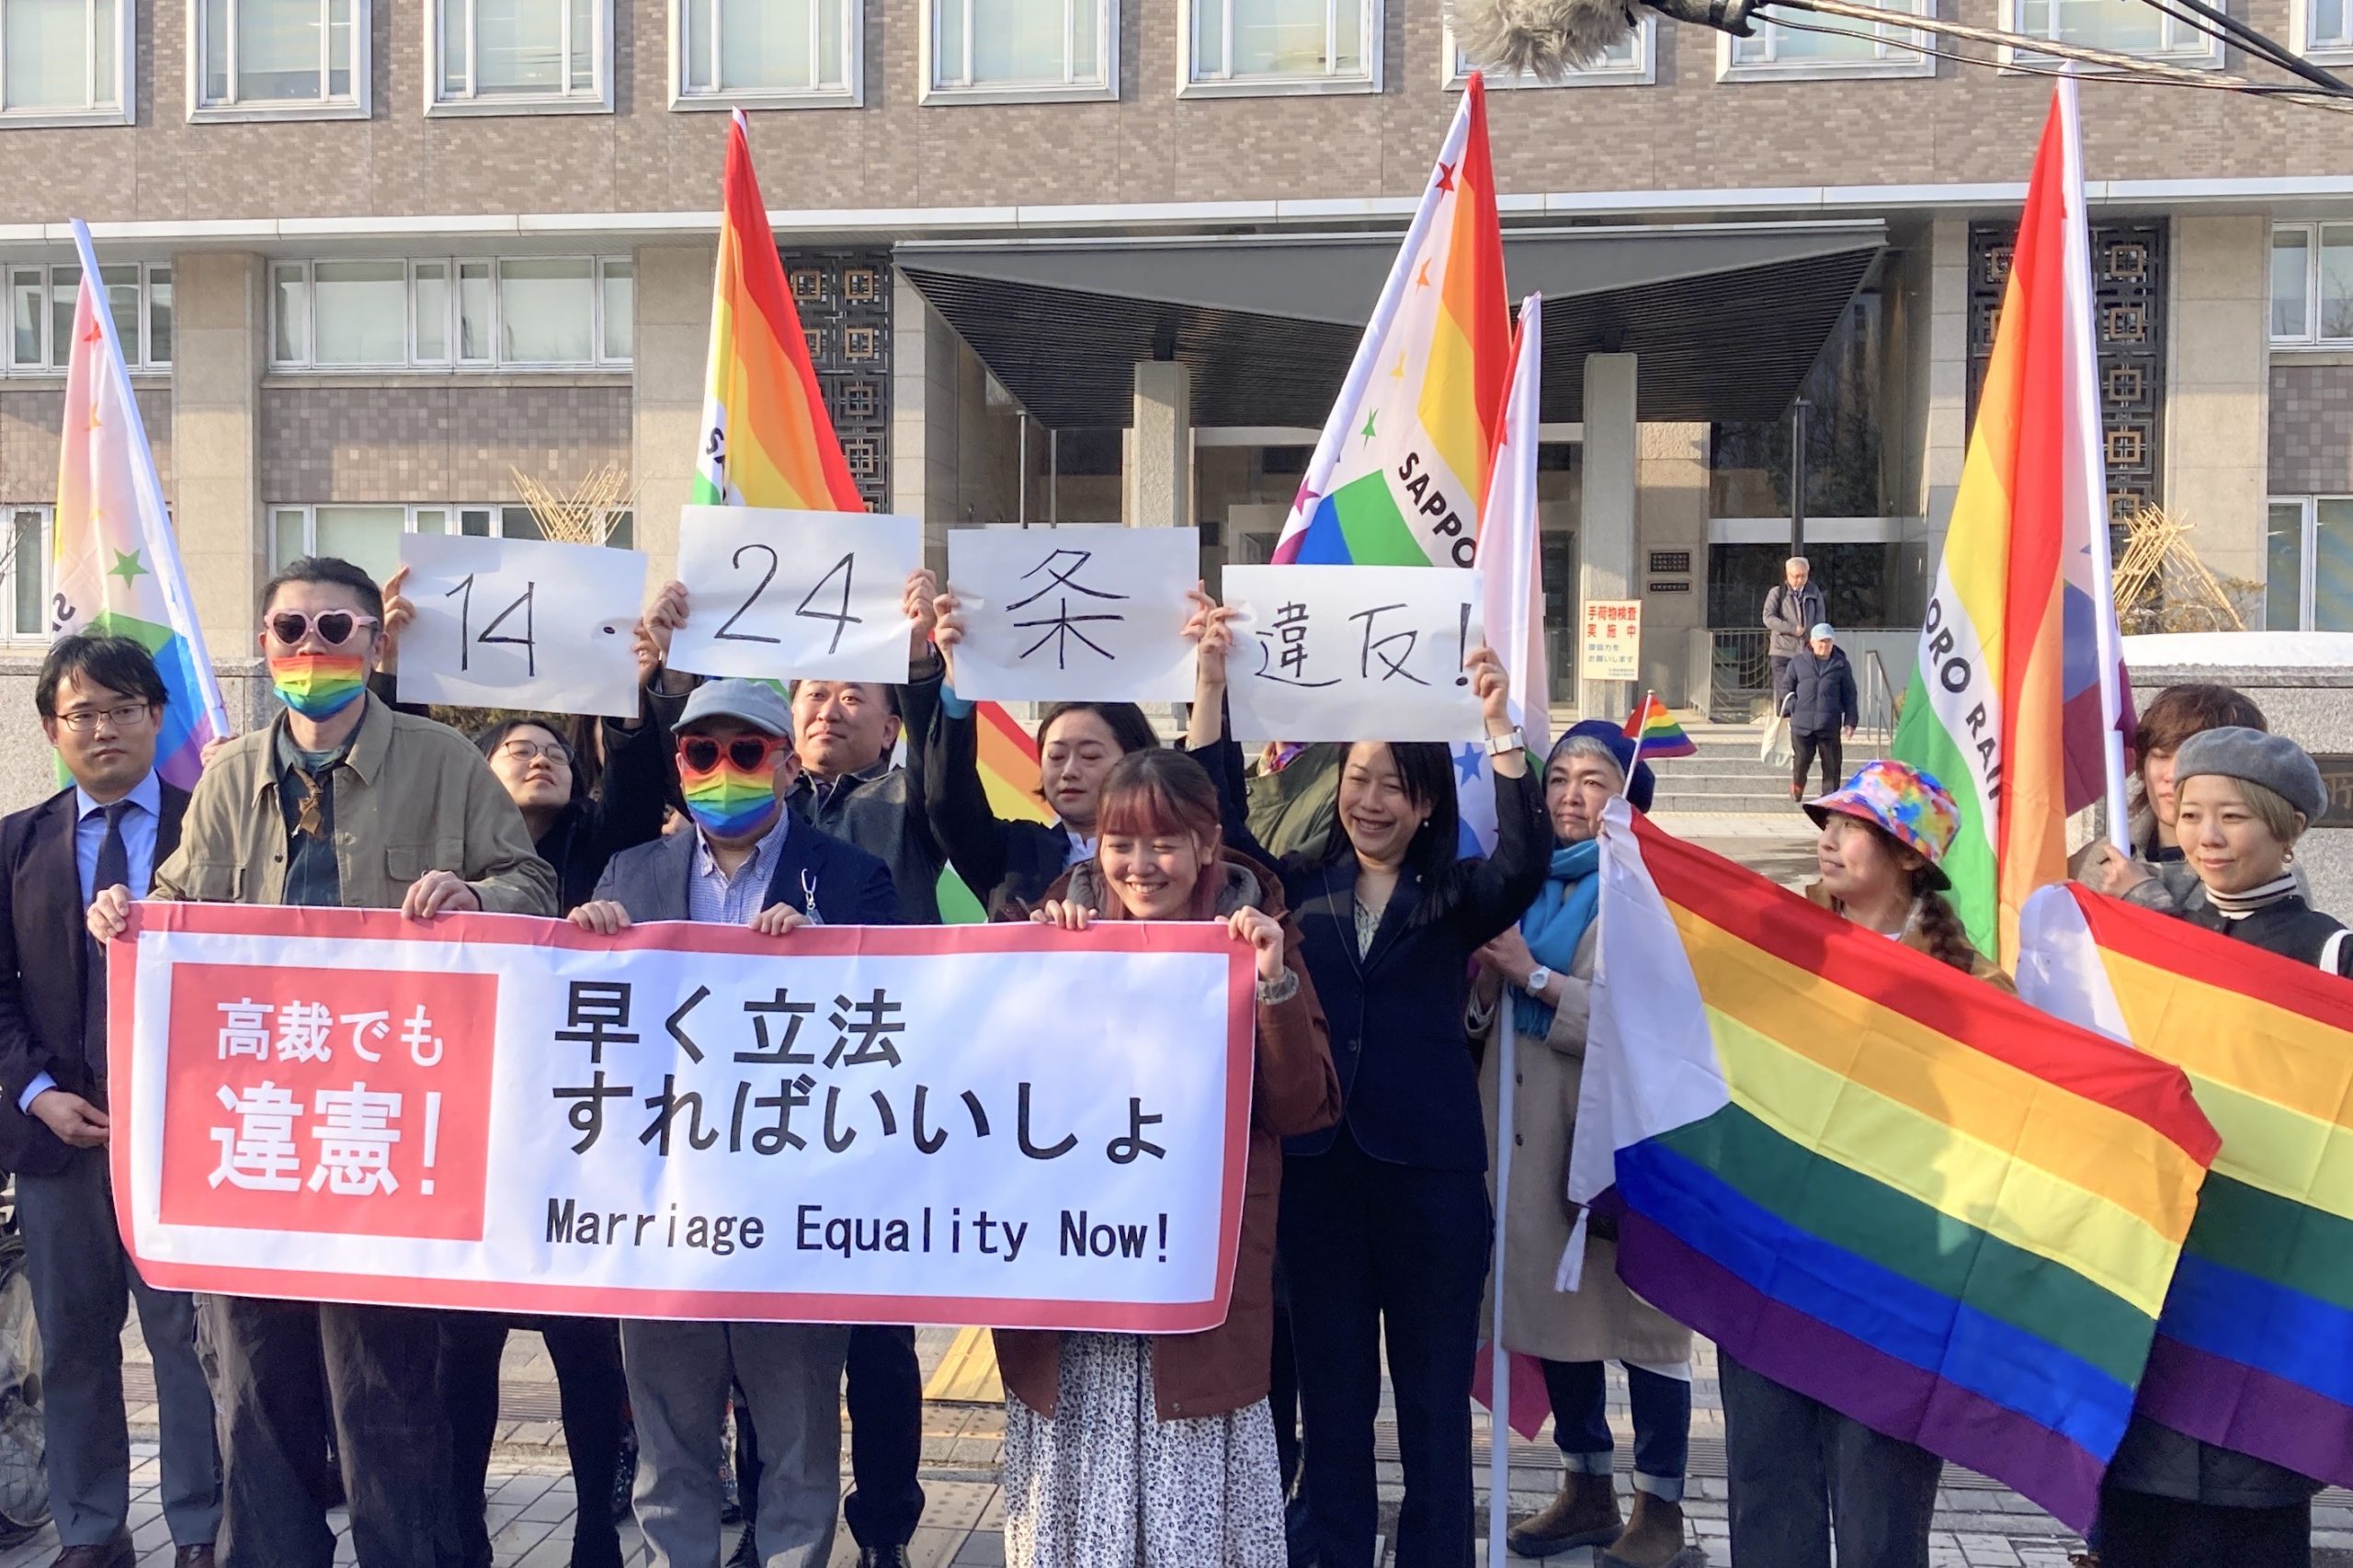 札幌地方裁判所の前で、「結婚の自由をすべての人に」北海道訴訟の原告と弁護団、支援者が、「高裁でも違憲！早く立法すればいいしょ」と書かれた横断幕やレインボーカラーの旗を掲げている